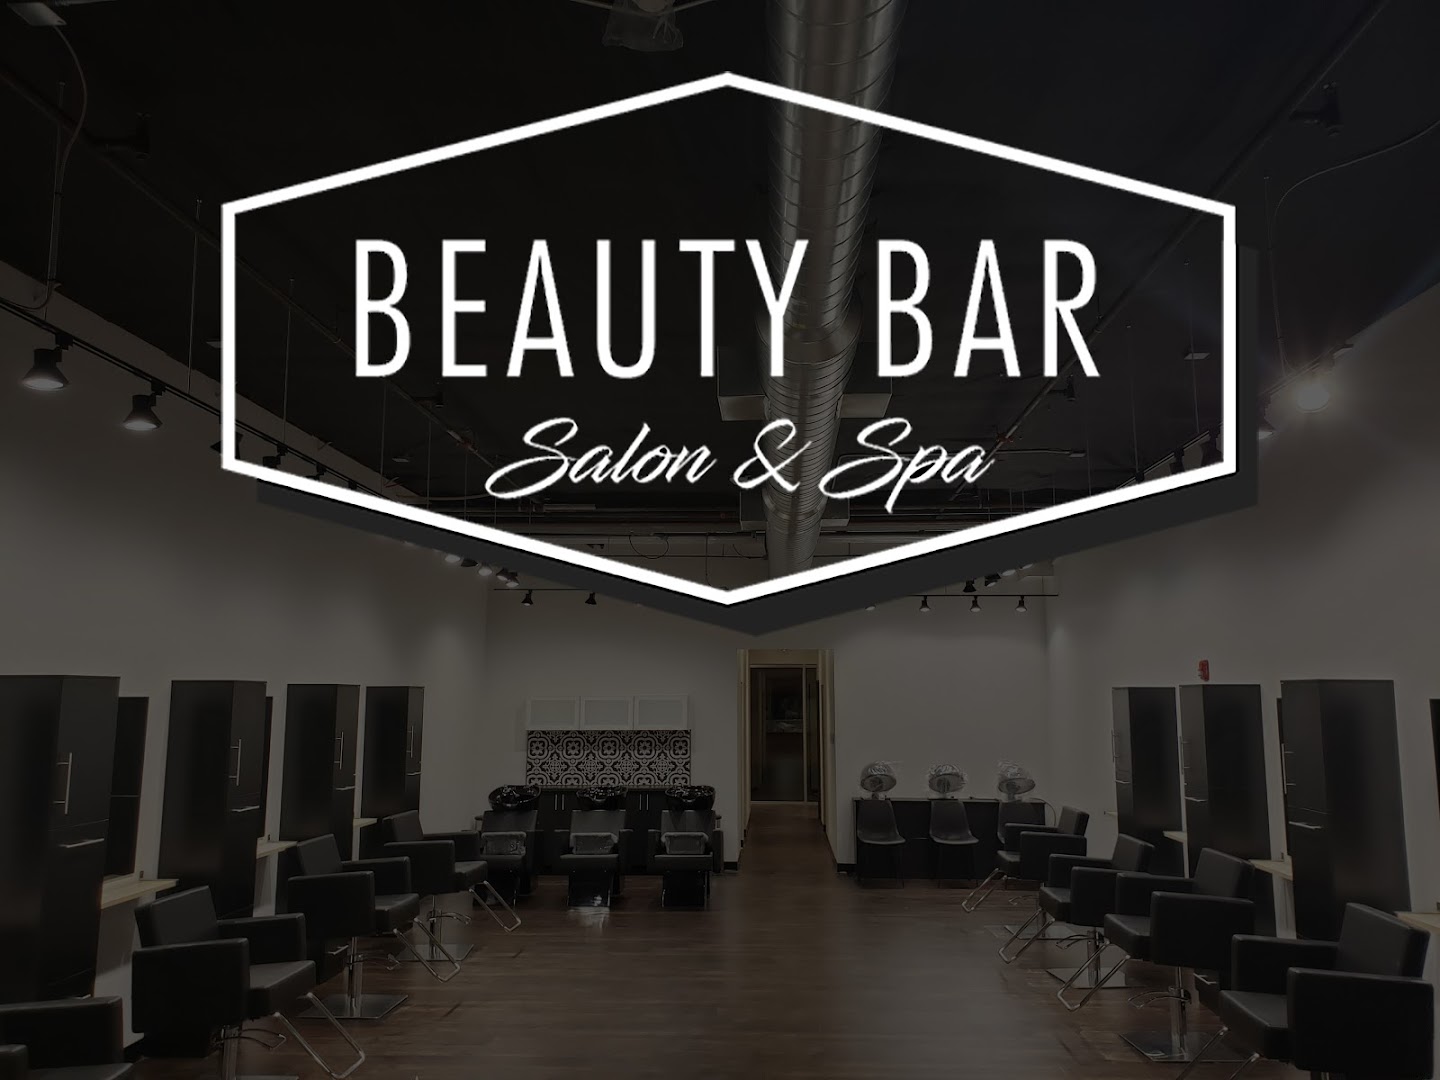 Beauty Bar Salon & Spa